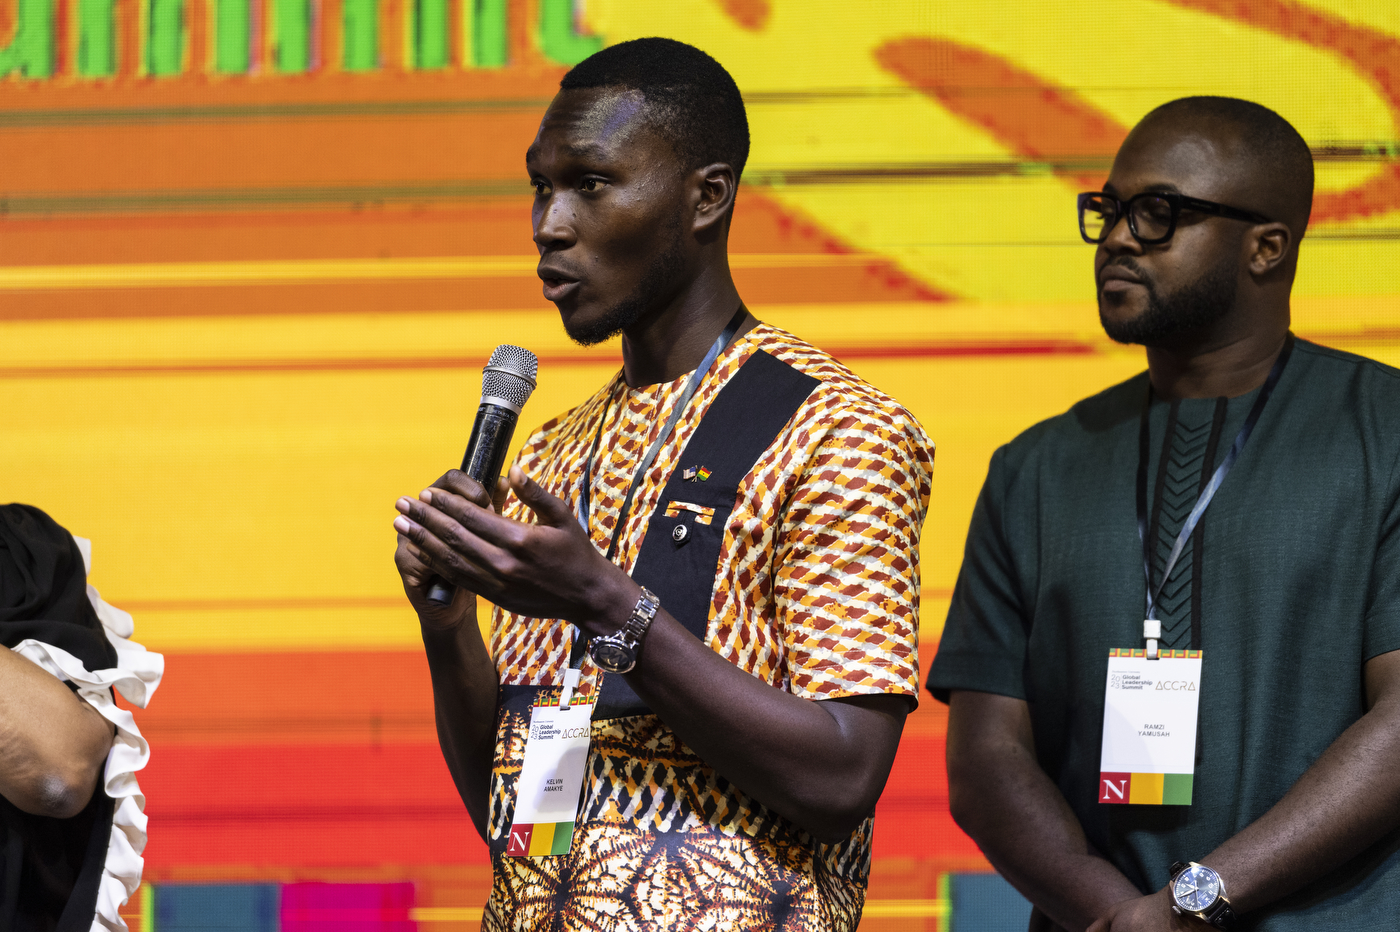 Kelvin Amakye speaking into microphone on stage at Global Leadership Summit in Ghana